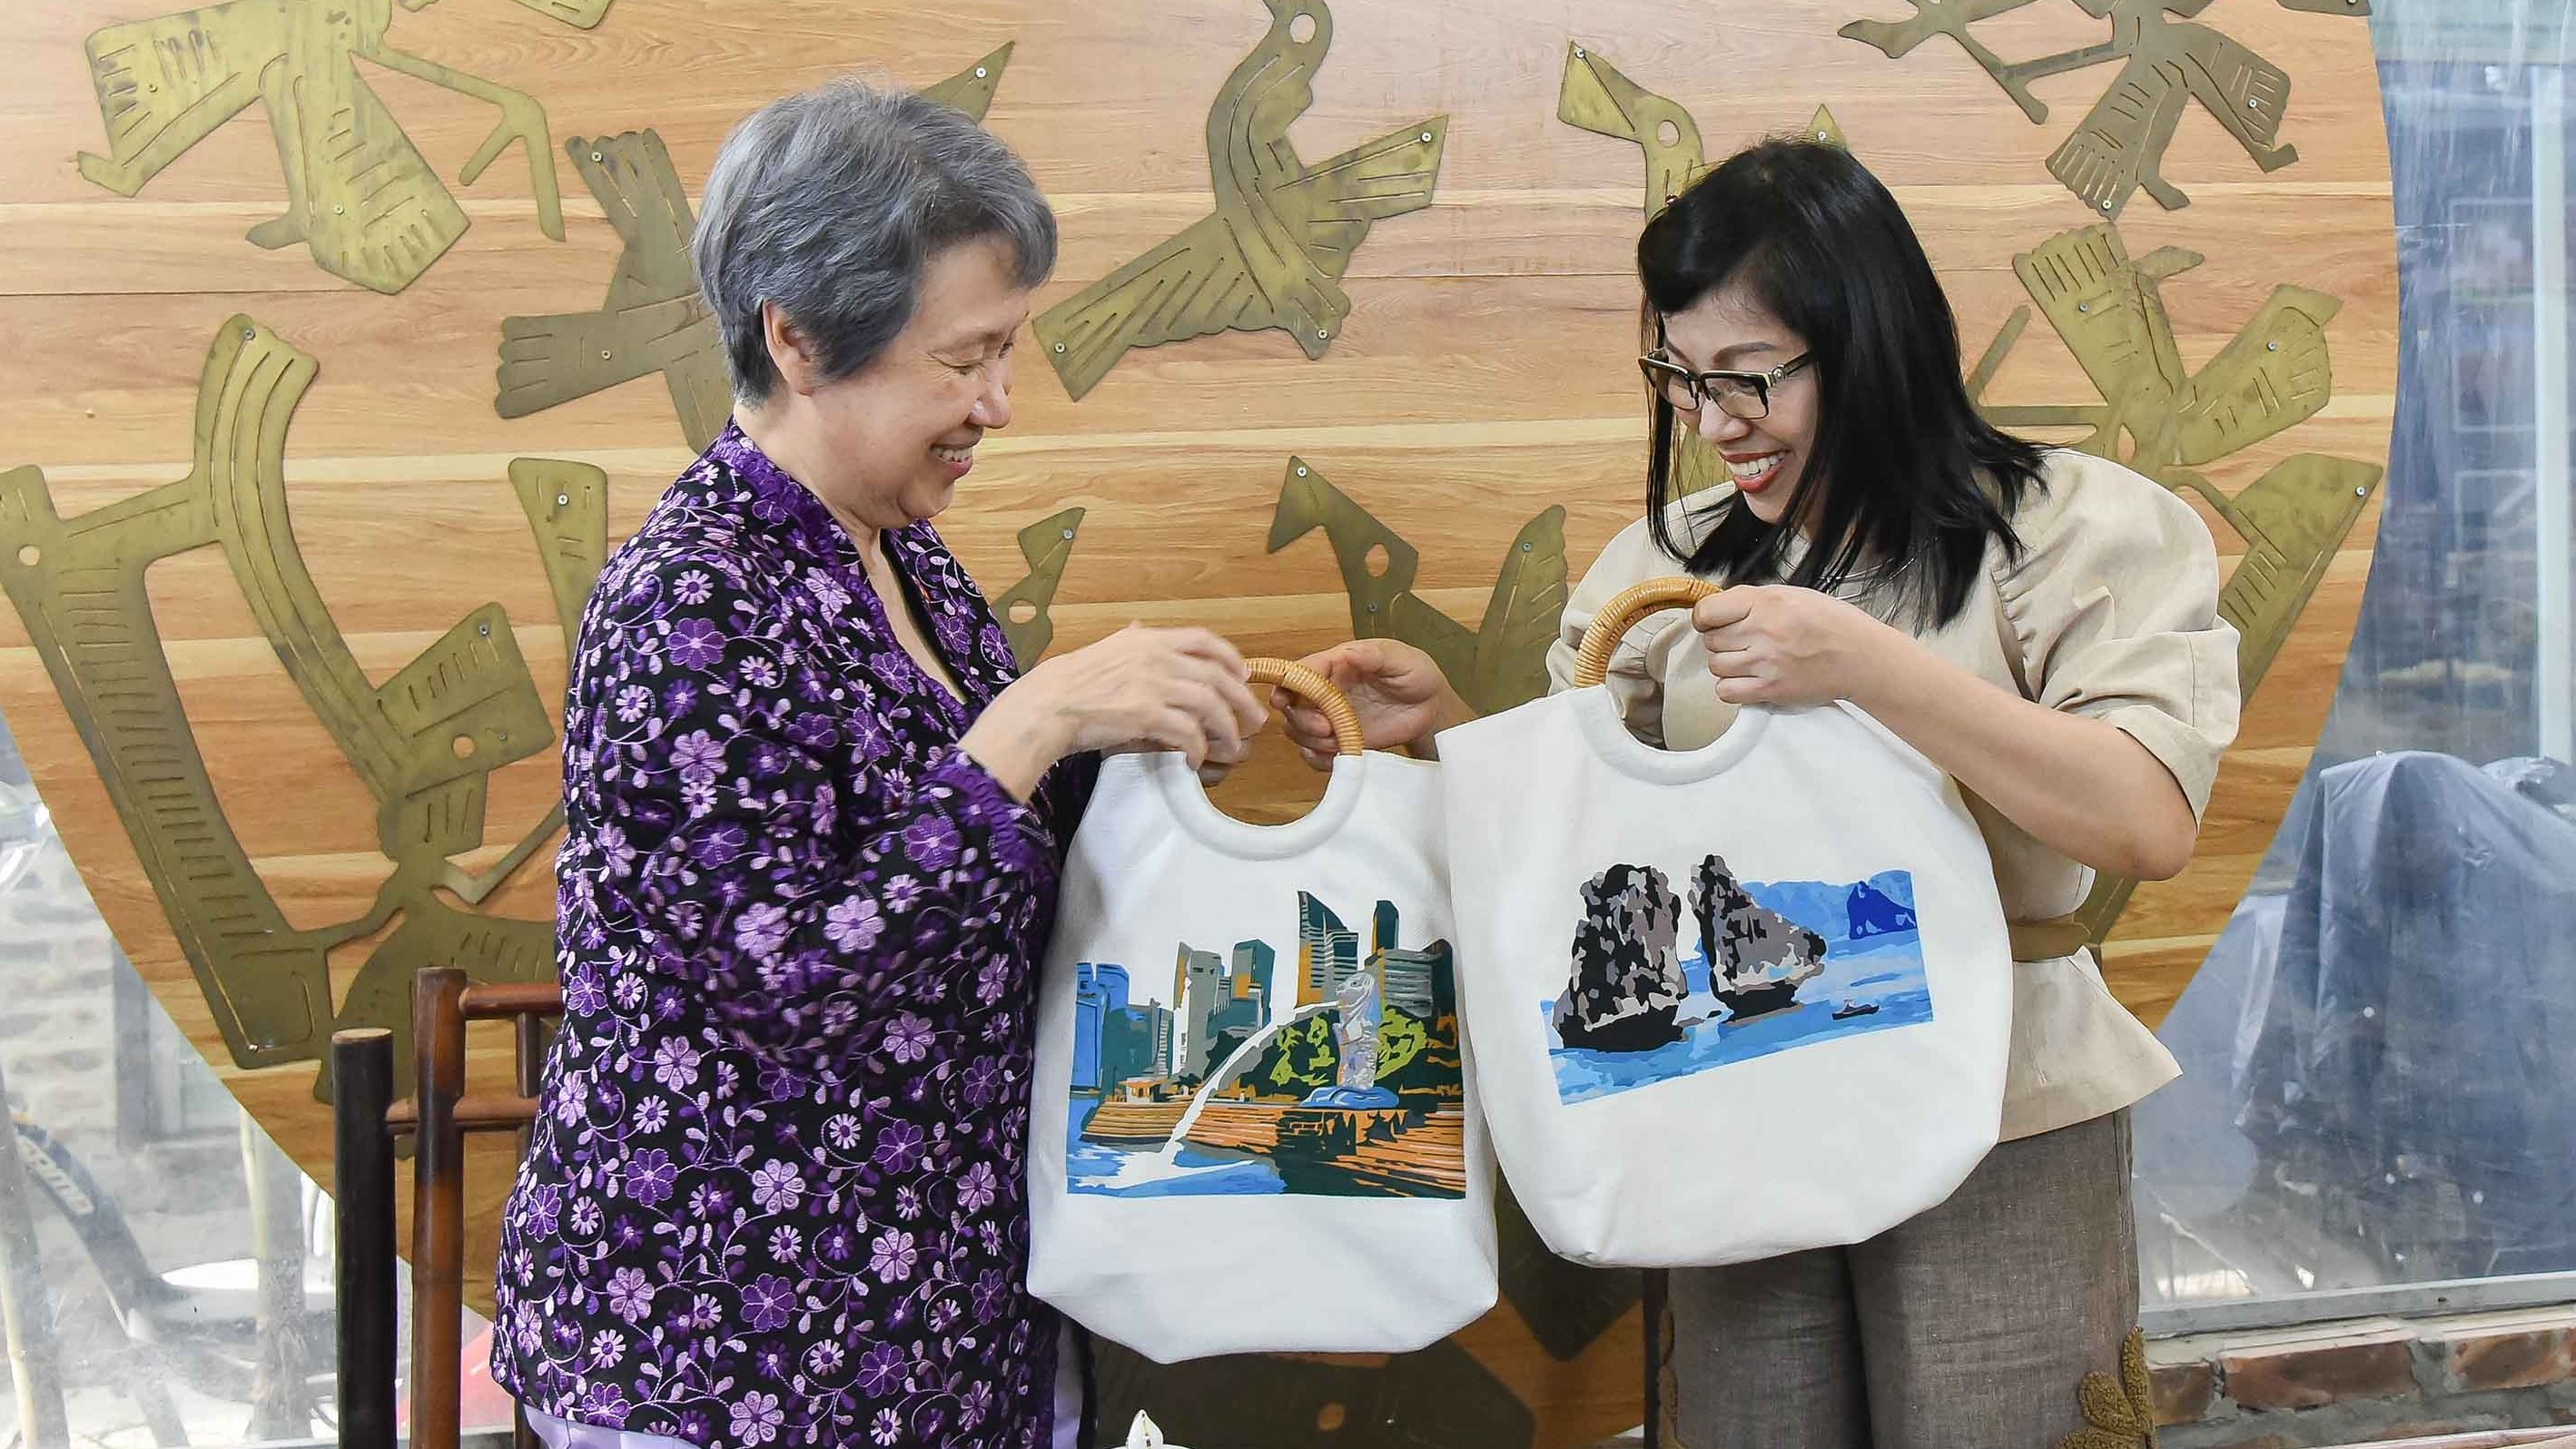 Phu nhân Thủ tướng Việt Nam và Singapore trải nghiệm làm tranh ghép vải tại Vụn Art